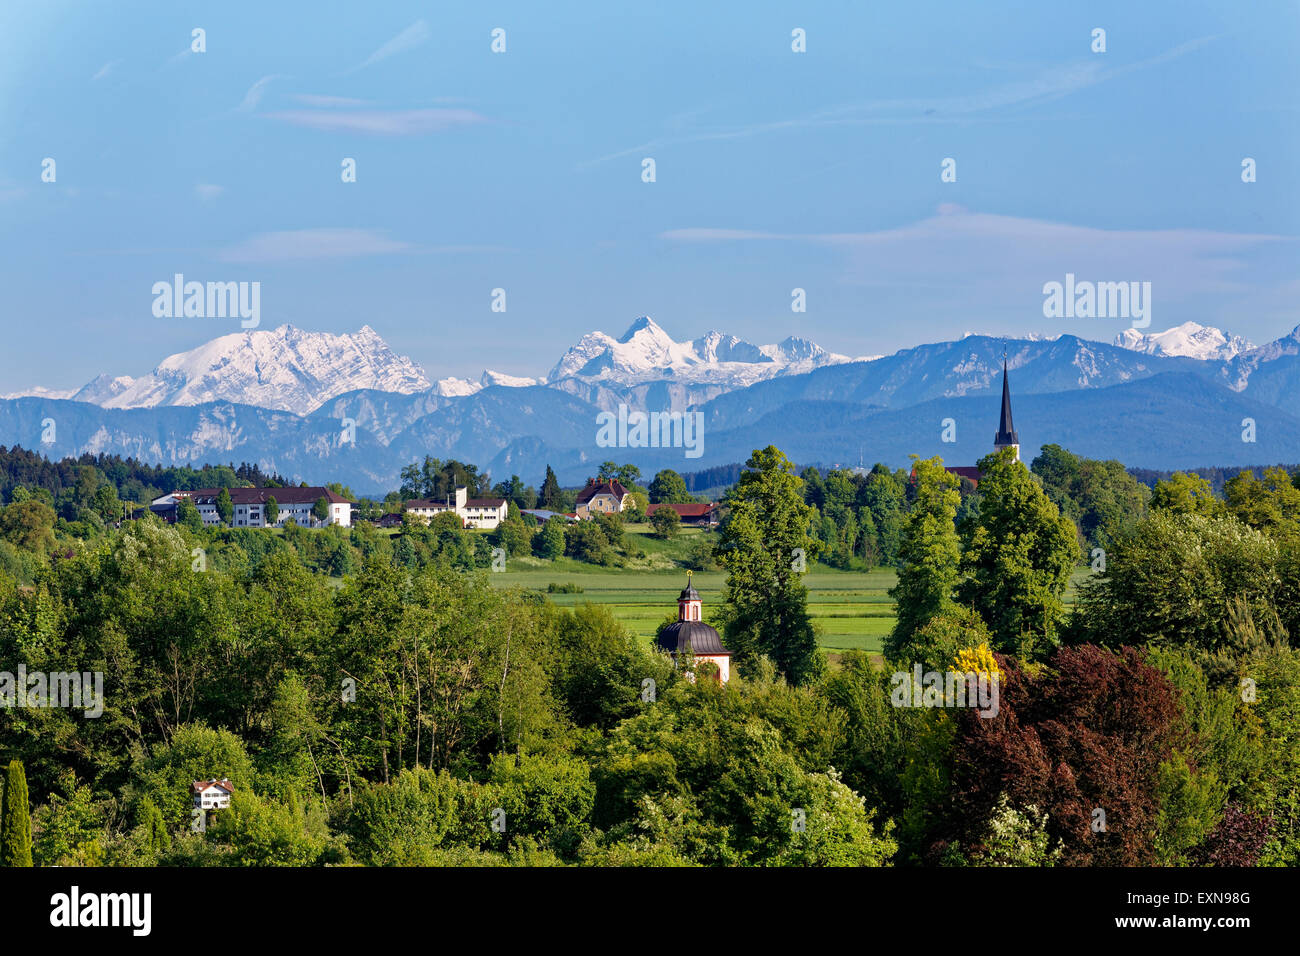 Germany, Bavaria, Chiemgau, Stein an der Traun, View to Sankt Georgen, Berchtesgaden Alps, with Watzmann and Hochkalter Stock Photo